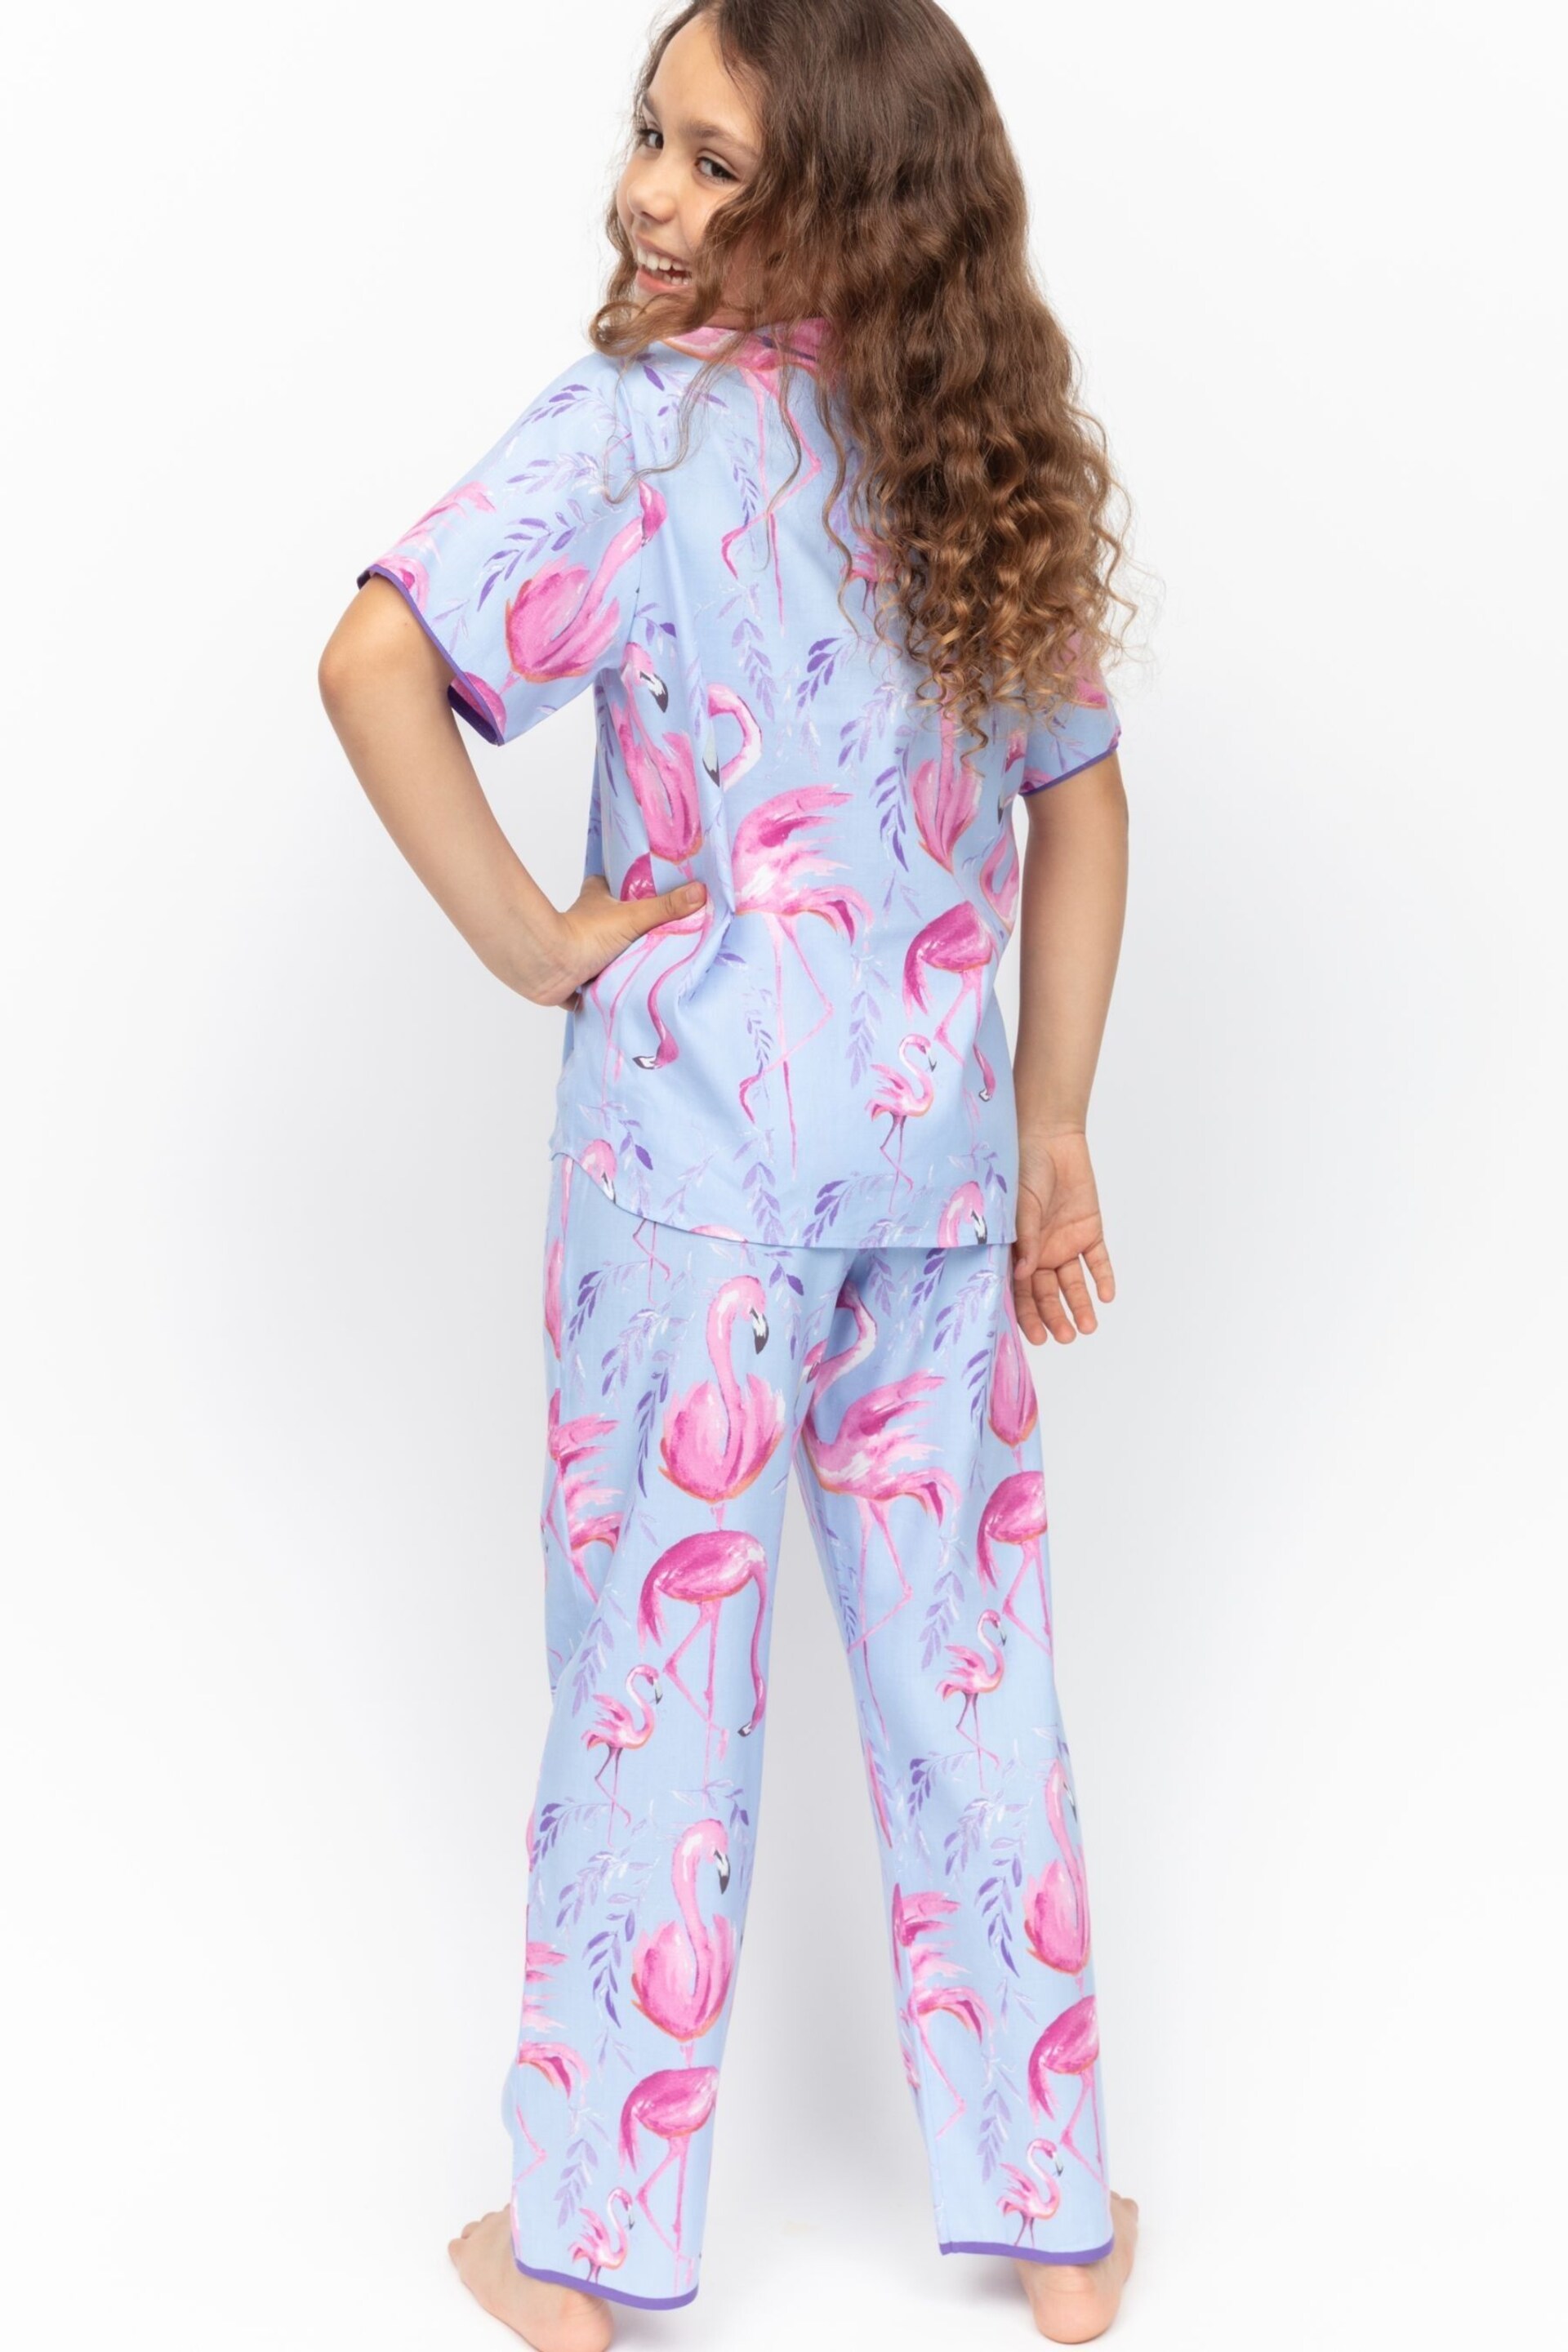 Minijammies Blue Flamingo Print Short Sleeve Pyjamas Set - Image 2 of 4